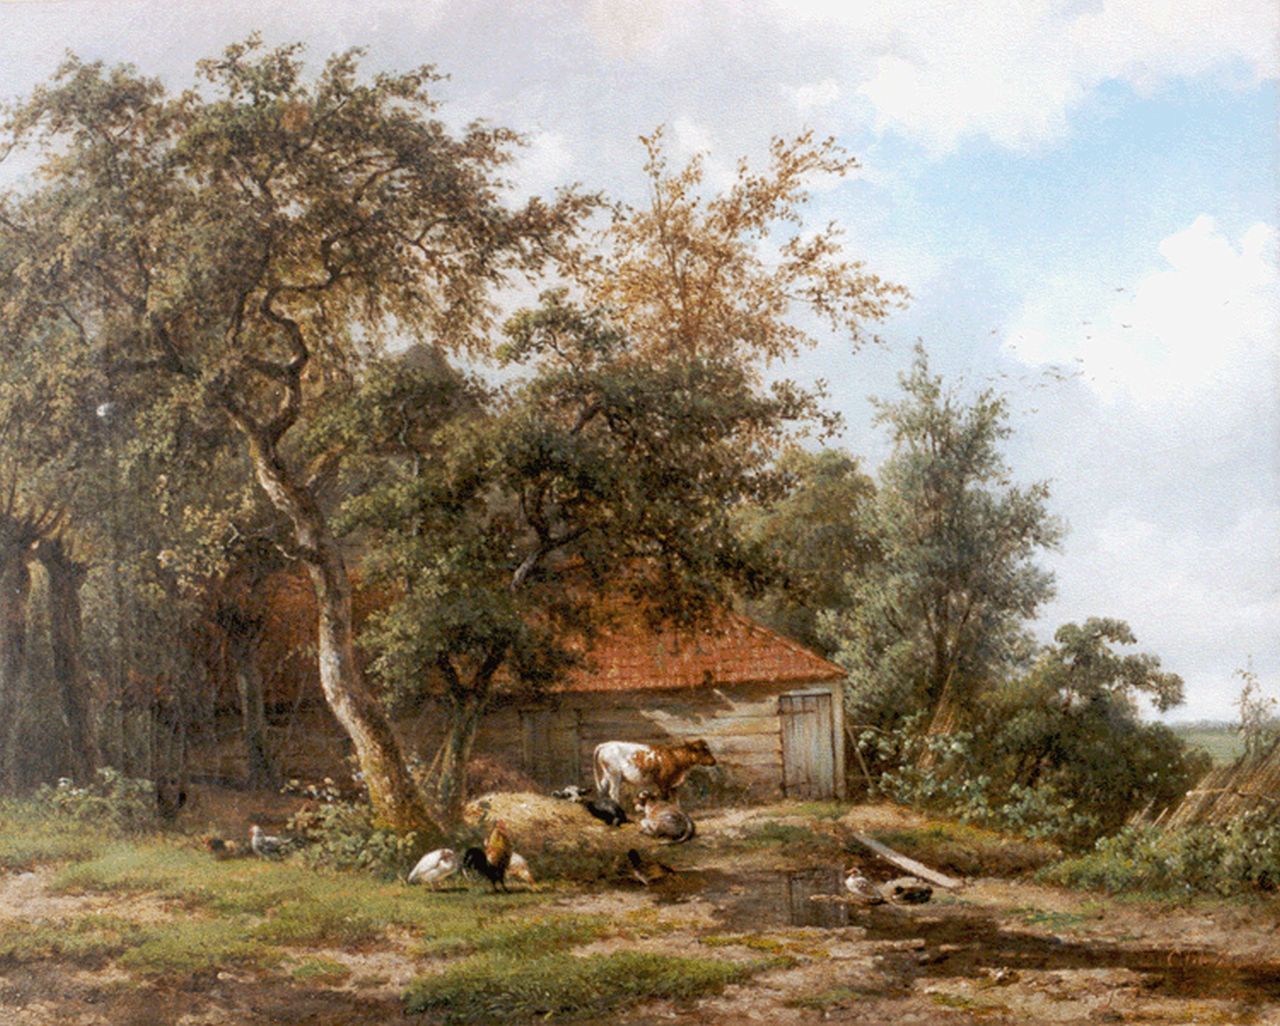 Vogel en Lebret C.J. de en F.  | Cornelis Johannes de en Frans Vogel en Lebret, Cattle and poultry, oil on canvas 46.8 x 57.0 cm, signed both l.r.